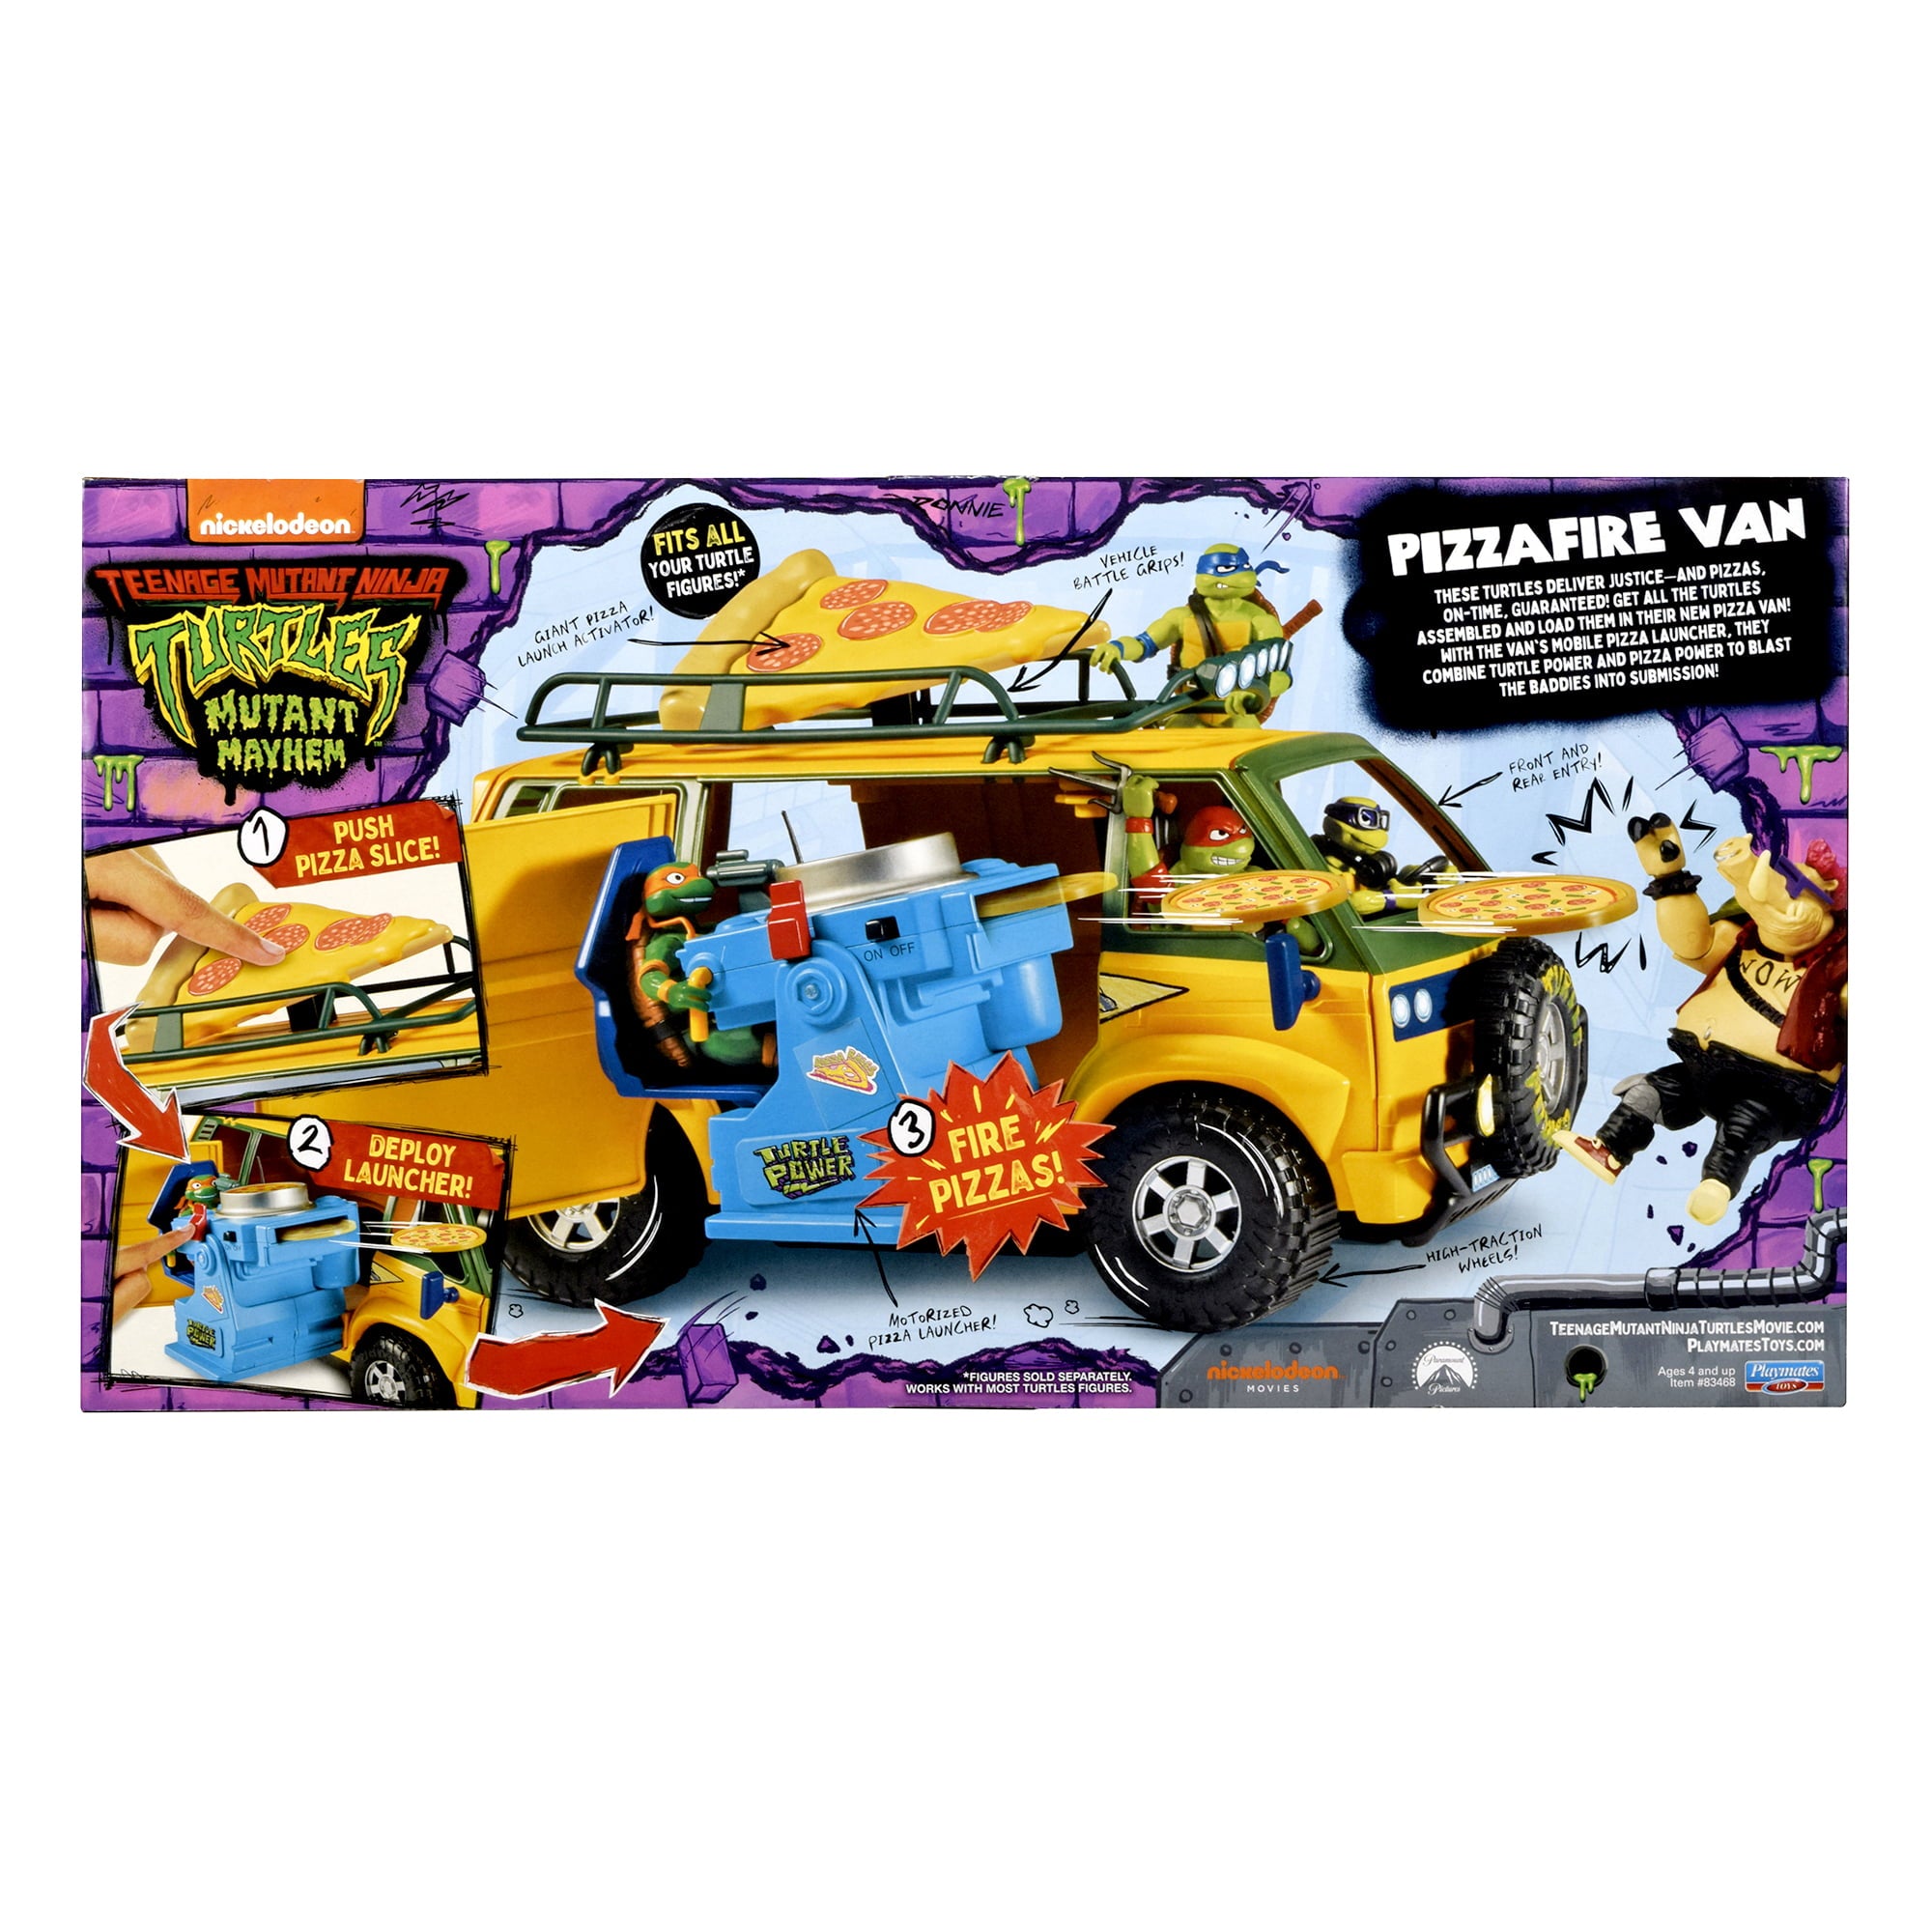 Playmates Toys - Teenage Mutant Ninja Turtles: Mutant Mayhem - Pizzafire Van - Marvelous Toys